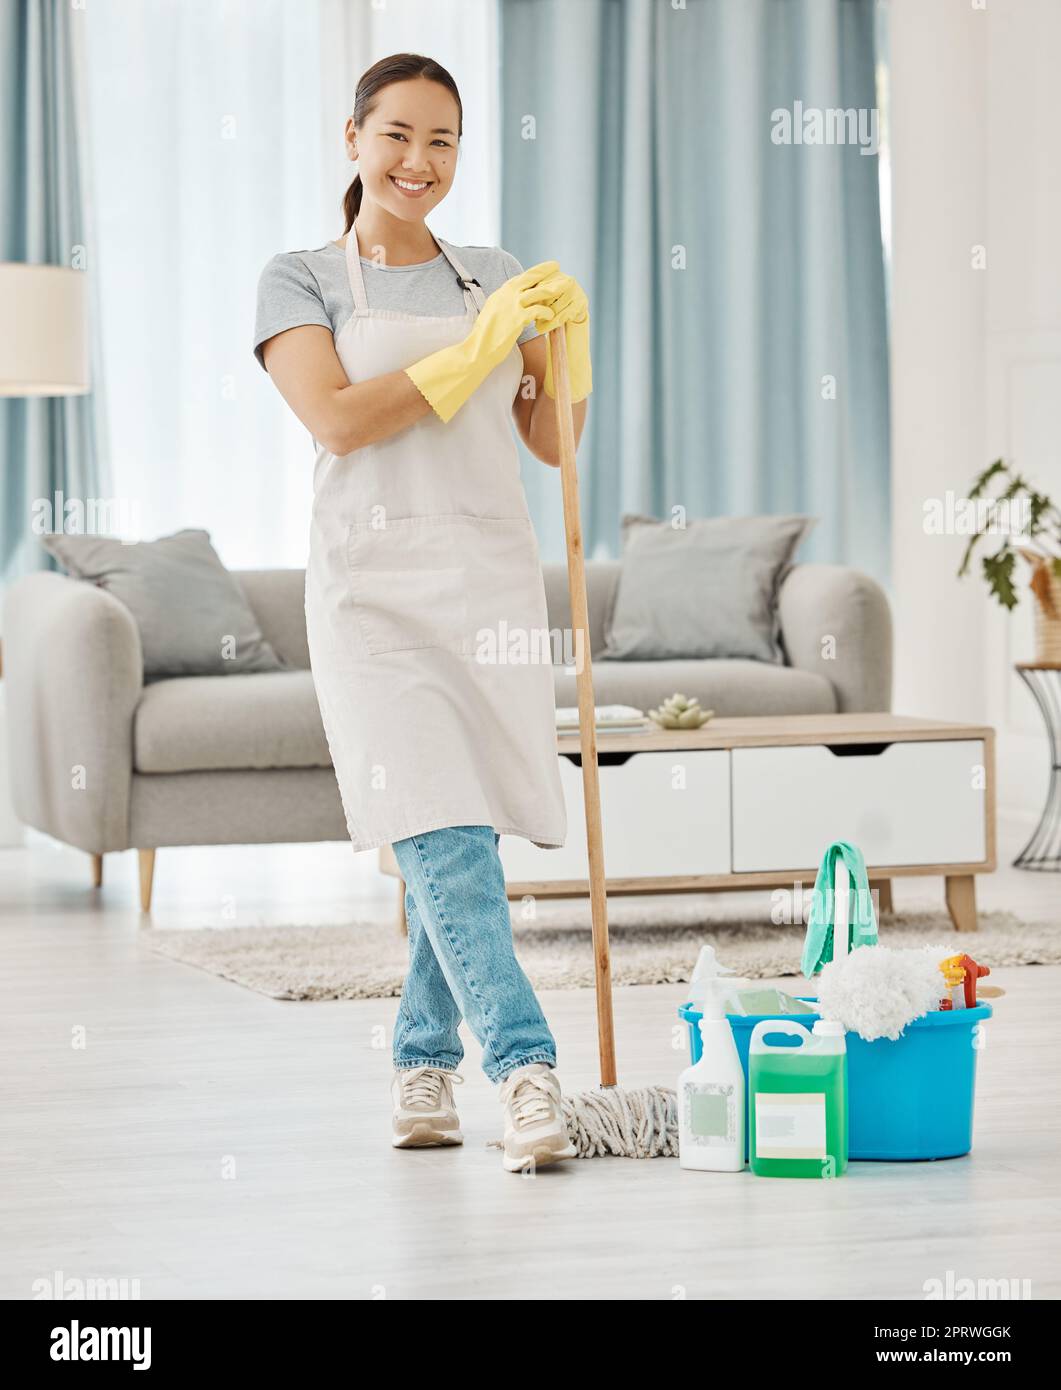 Nettoyage du sol, travail à la maison et femme travaillant à la maison nettoyage salle de séjour, faisant le travail avec le sourire et heureux de nettoyer appartement de maison. Portrait d'un ménage asiatique ou d'une femme de ménage Banque D'Images